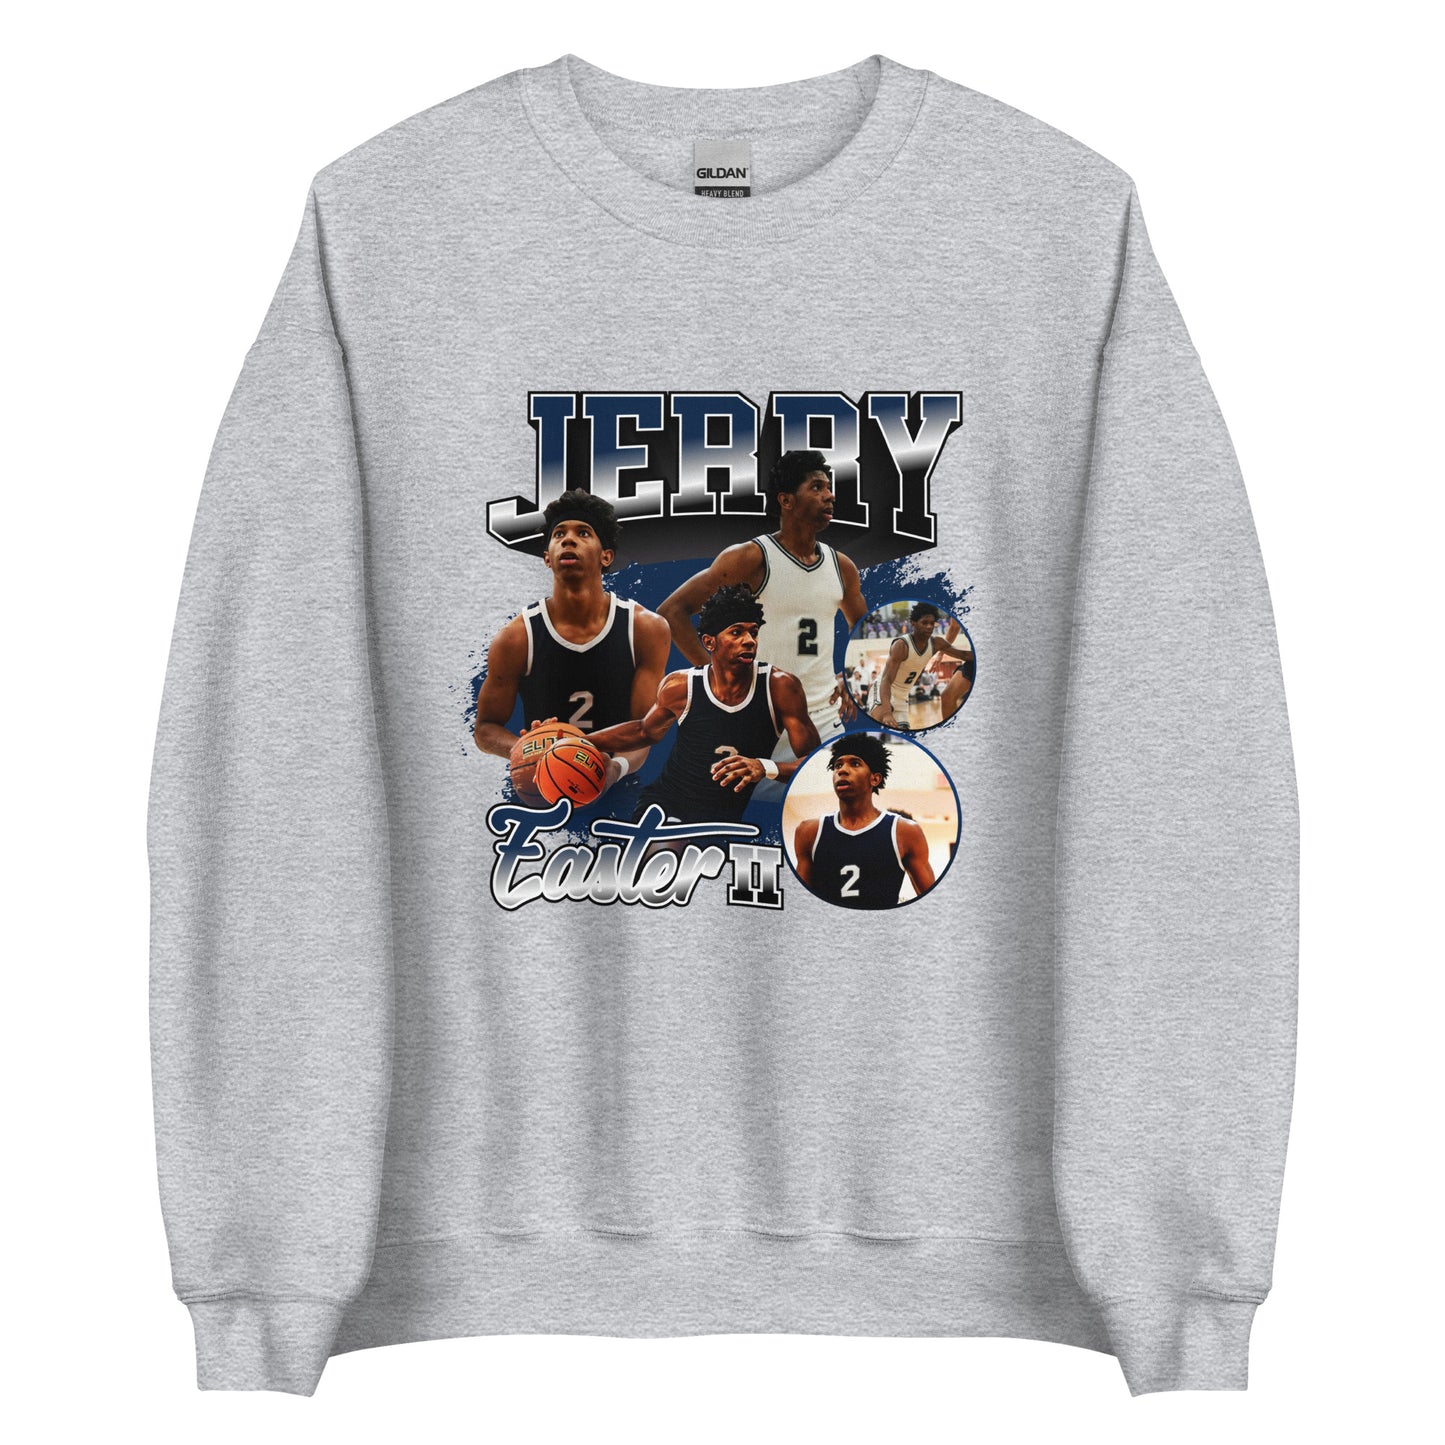 Jerry Easter "Vintage" Sweatshirt - Fan Arch